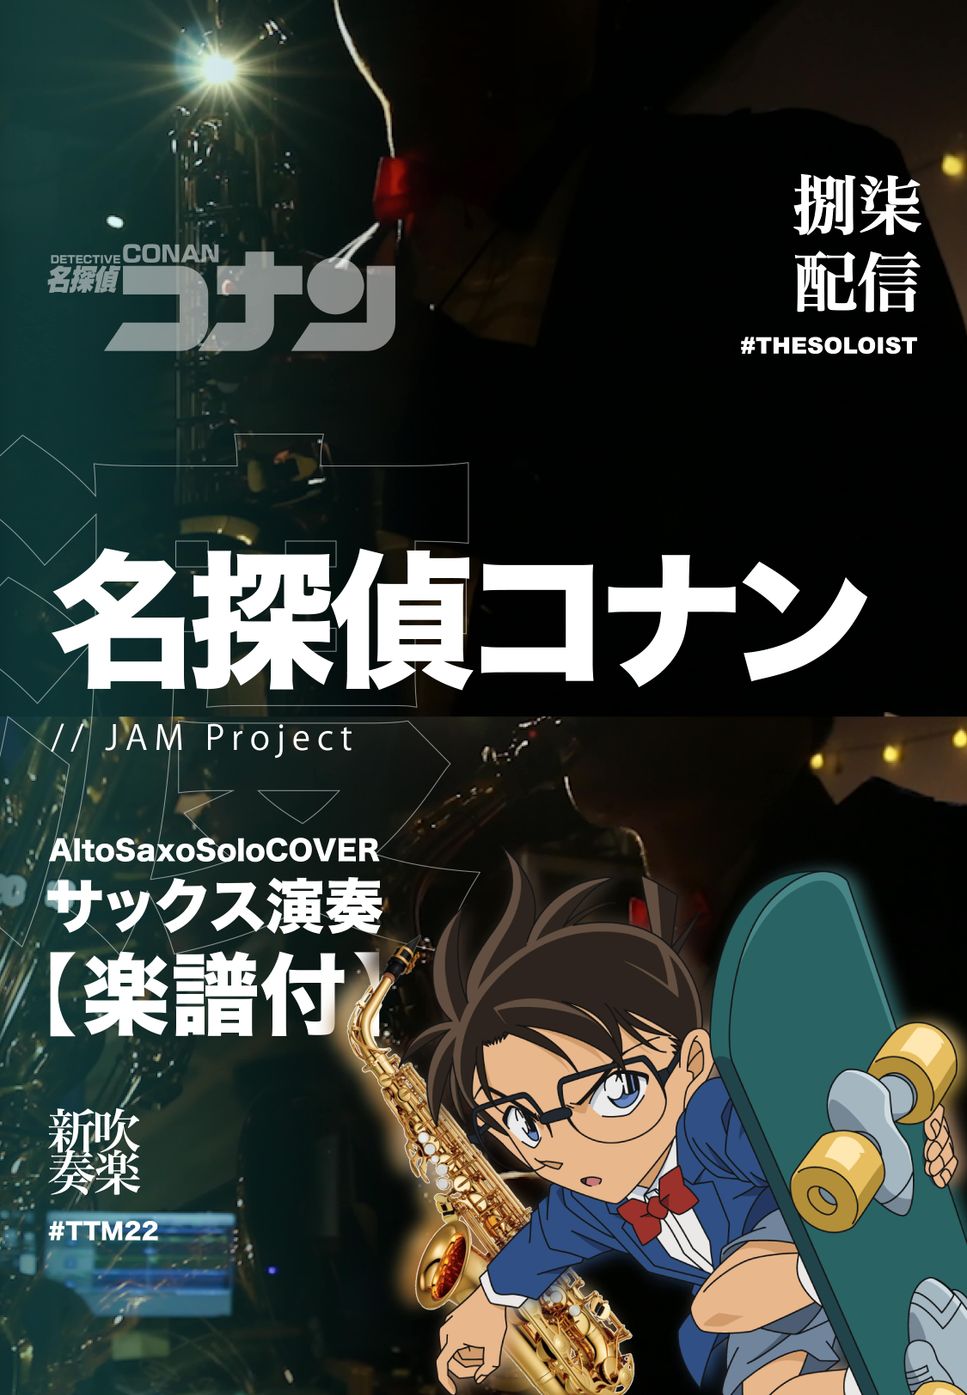 Detective Conan - Detective Conan Theme (Alto Saxo Solo) by 渡